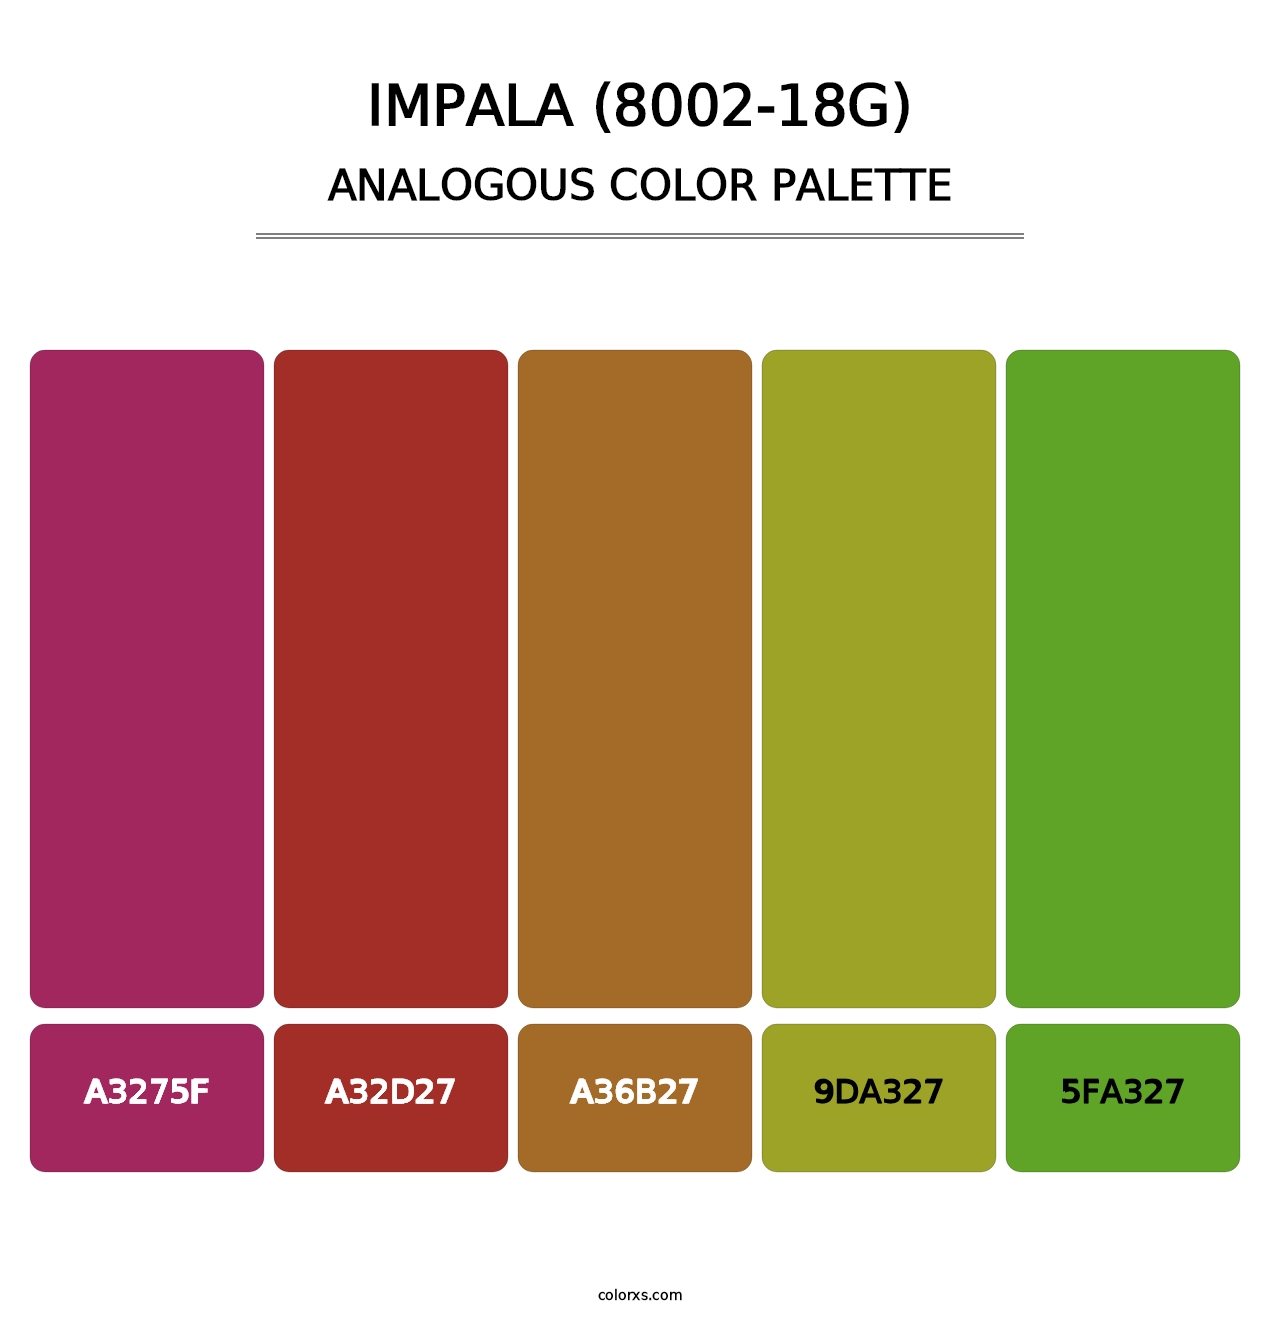 Impala (8002-18G) - Analogous Color Palette